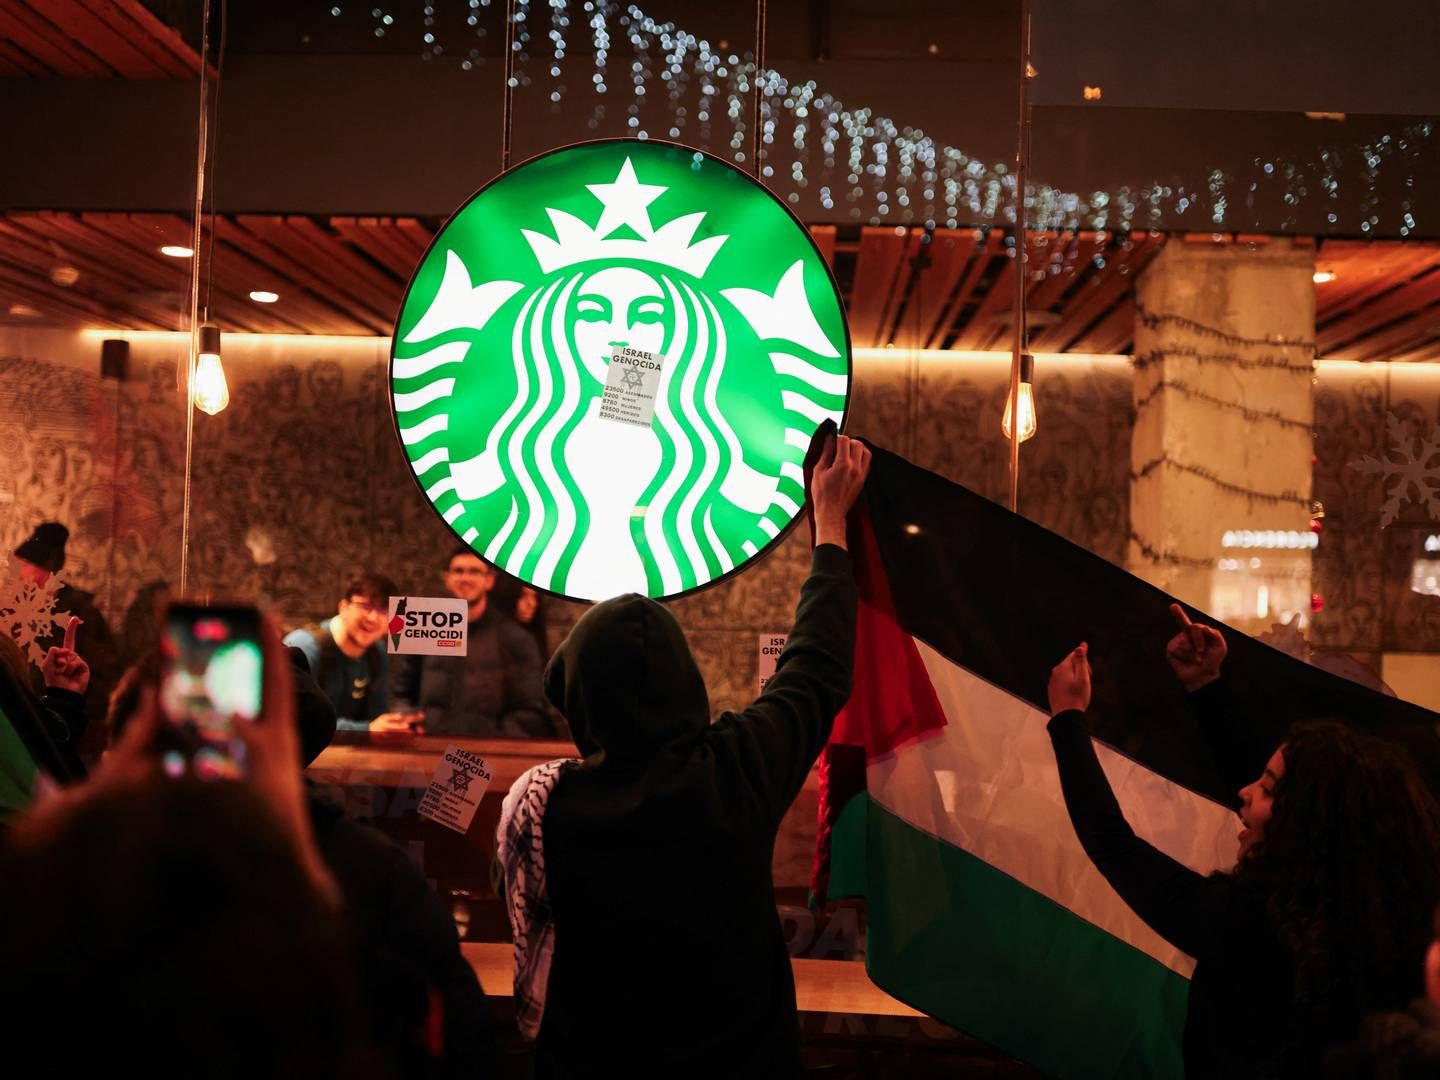 Konflikten i Gaza har fået pro-palæstinensere til at rette deres vrede mod kaffekæden, der har oplevet at få vandaliseret sine butikker. | Foto: Nacho Doce